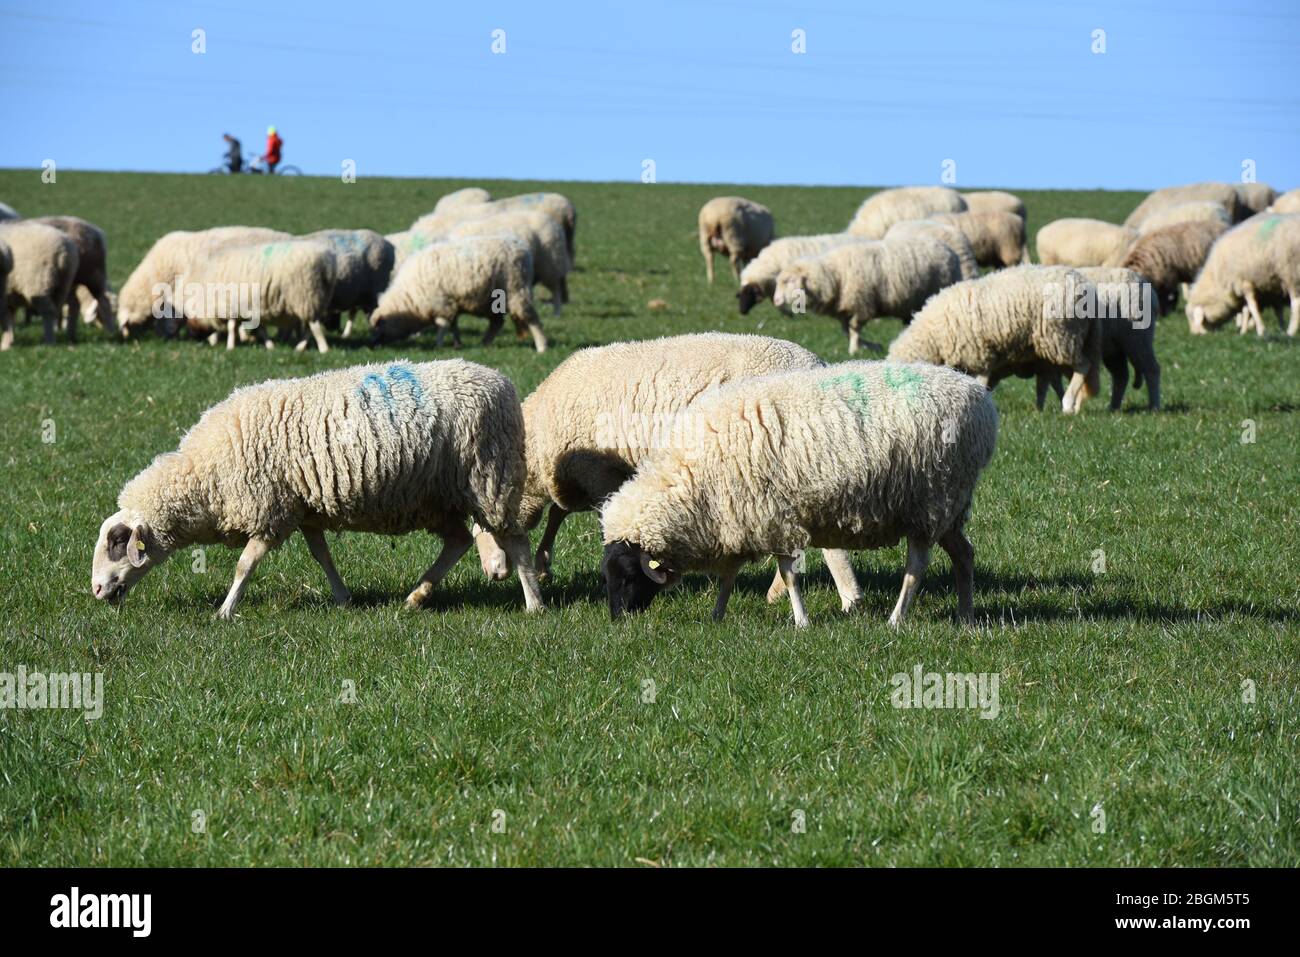 Schafe Ovis sind eine Saatgetieranlage aus der Gruppe der Ziegenartigen. Ovis Schafe sind ein Säugetier aus der Ziegengruppe. Stockfoto